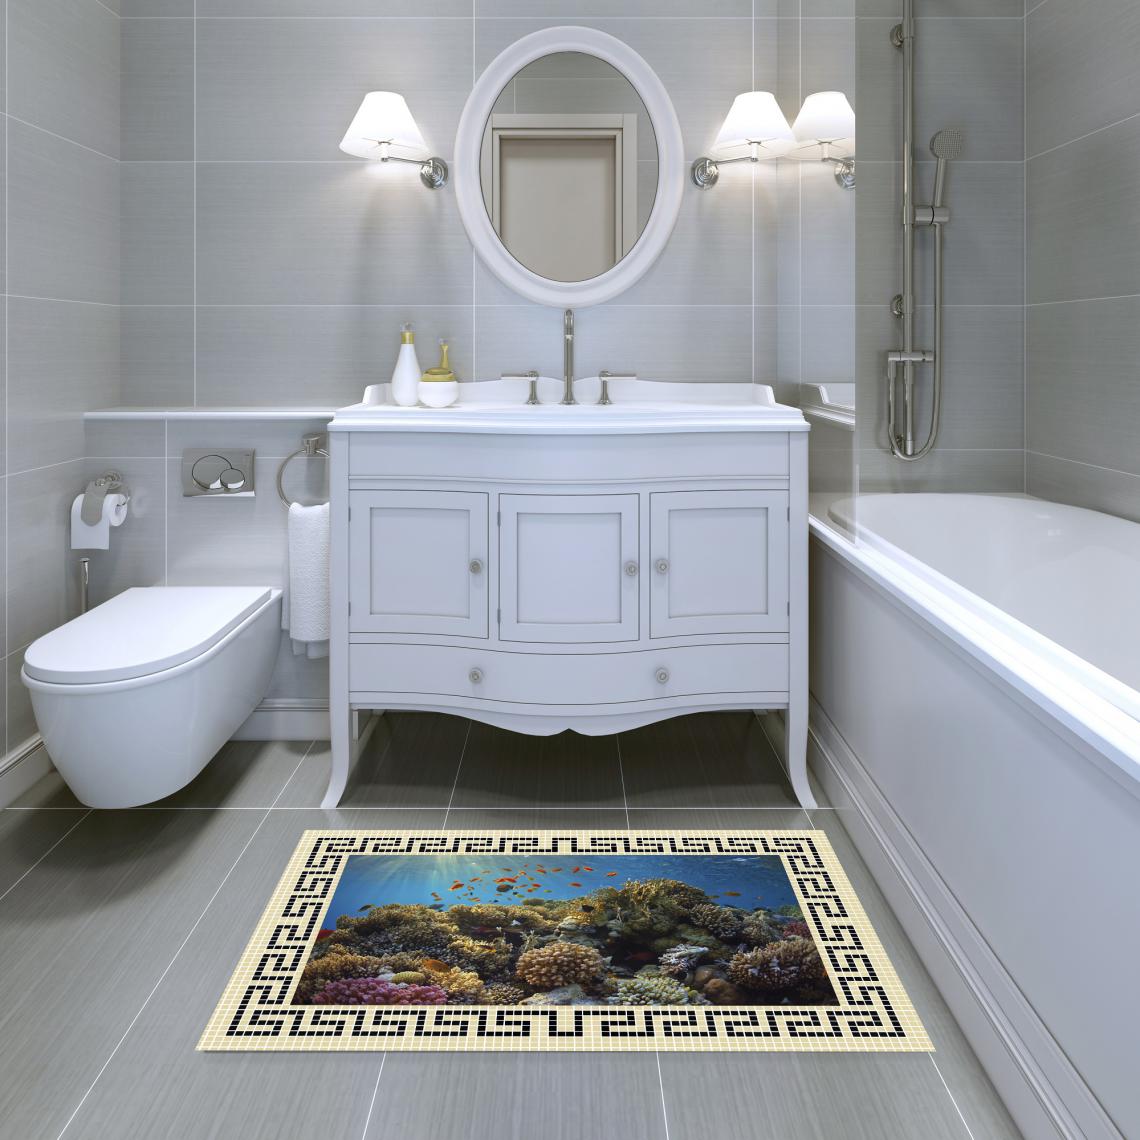 Alter - Tapis de salle de bain, 100% Made in Italy, Tapis antitache avec impression numérique, Tapis antidérapant et lavable, Modèle Alana, cm 90x52 - Tapis